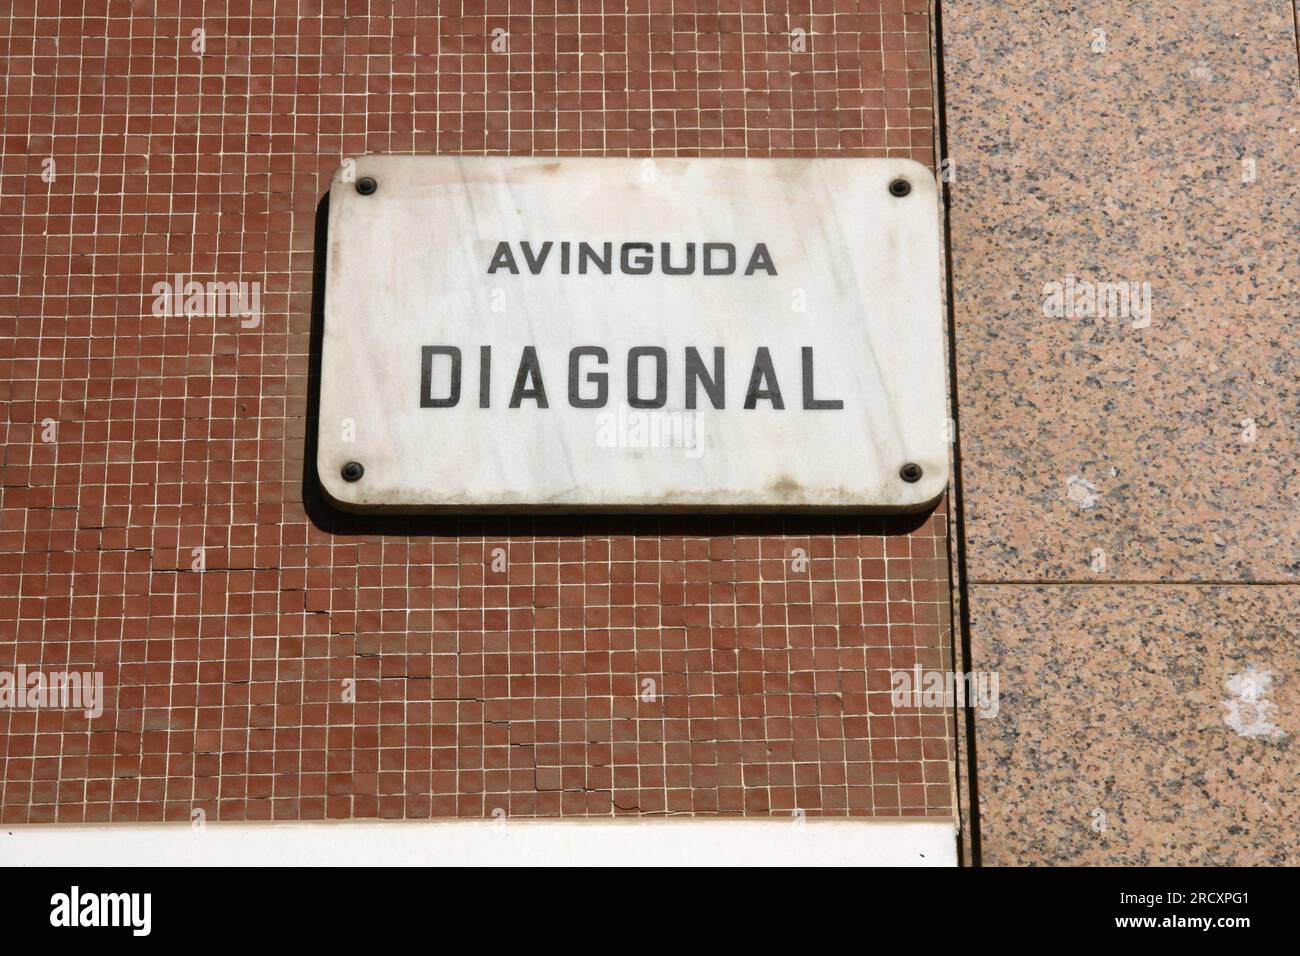 Nombre de la calle en Barcelona - Avinguda Diagonal. Calle importante de Barcelona. Foto de stock